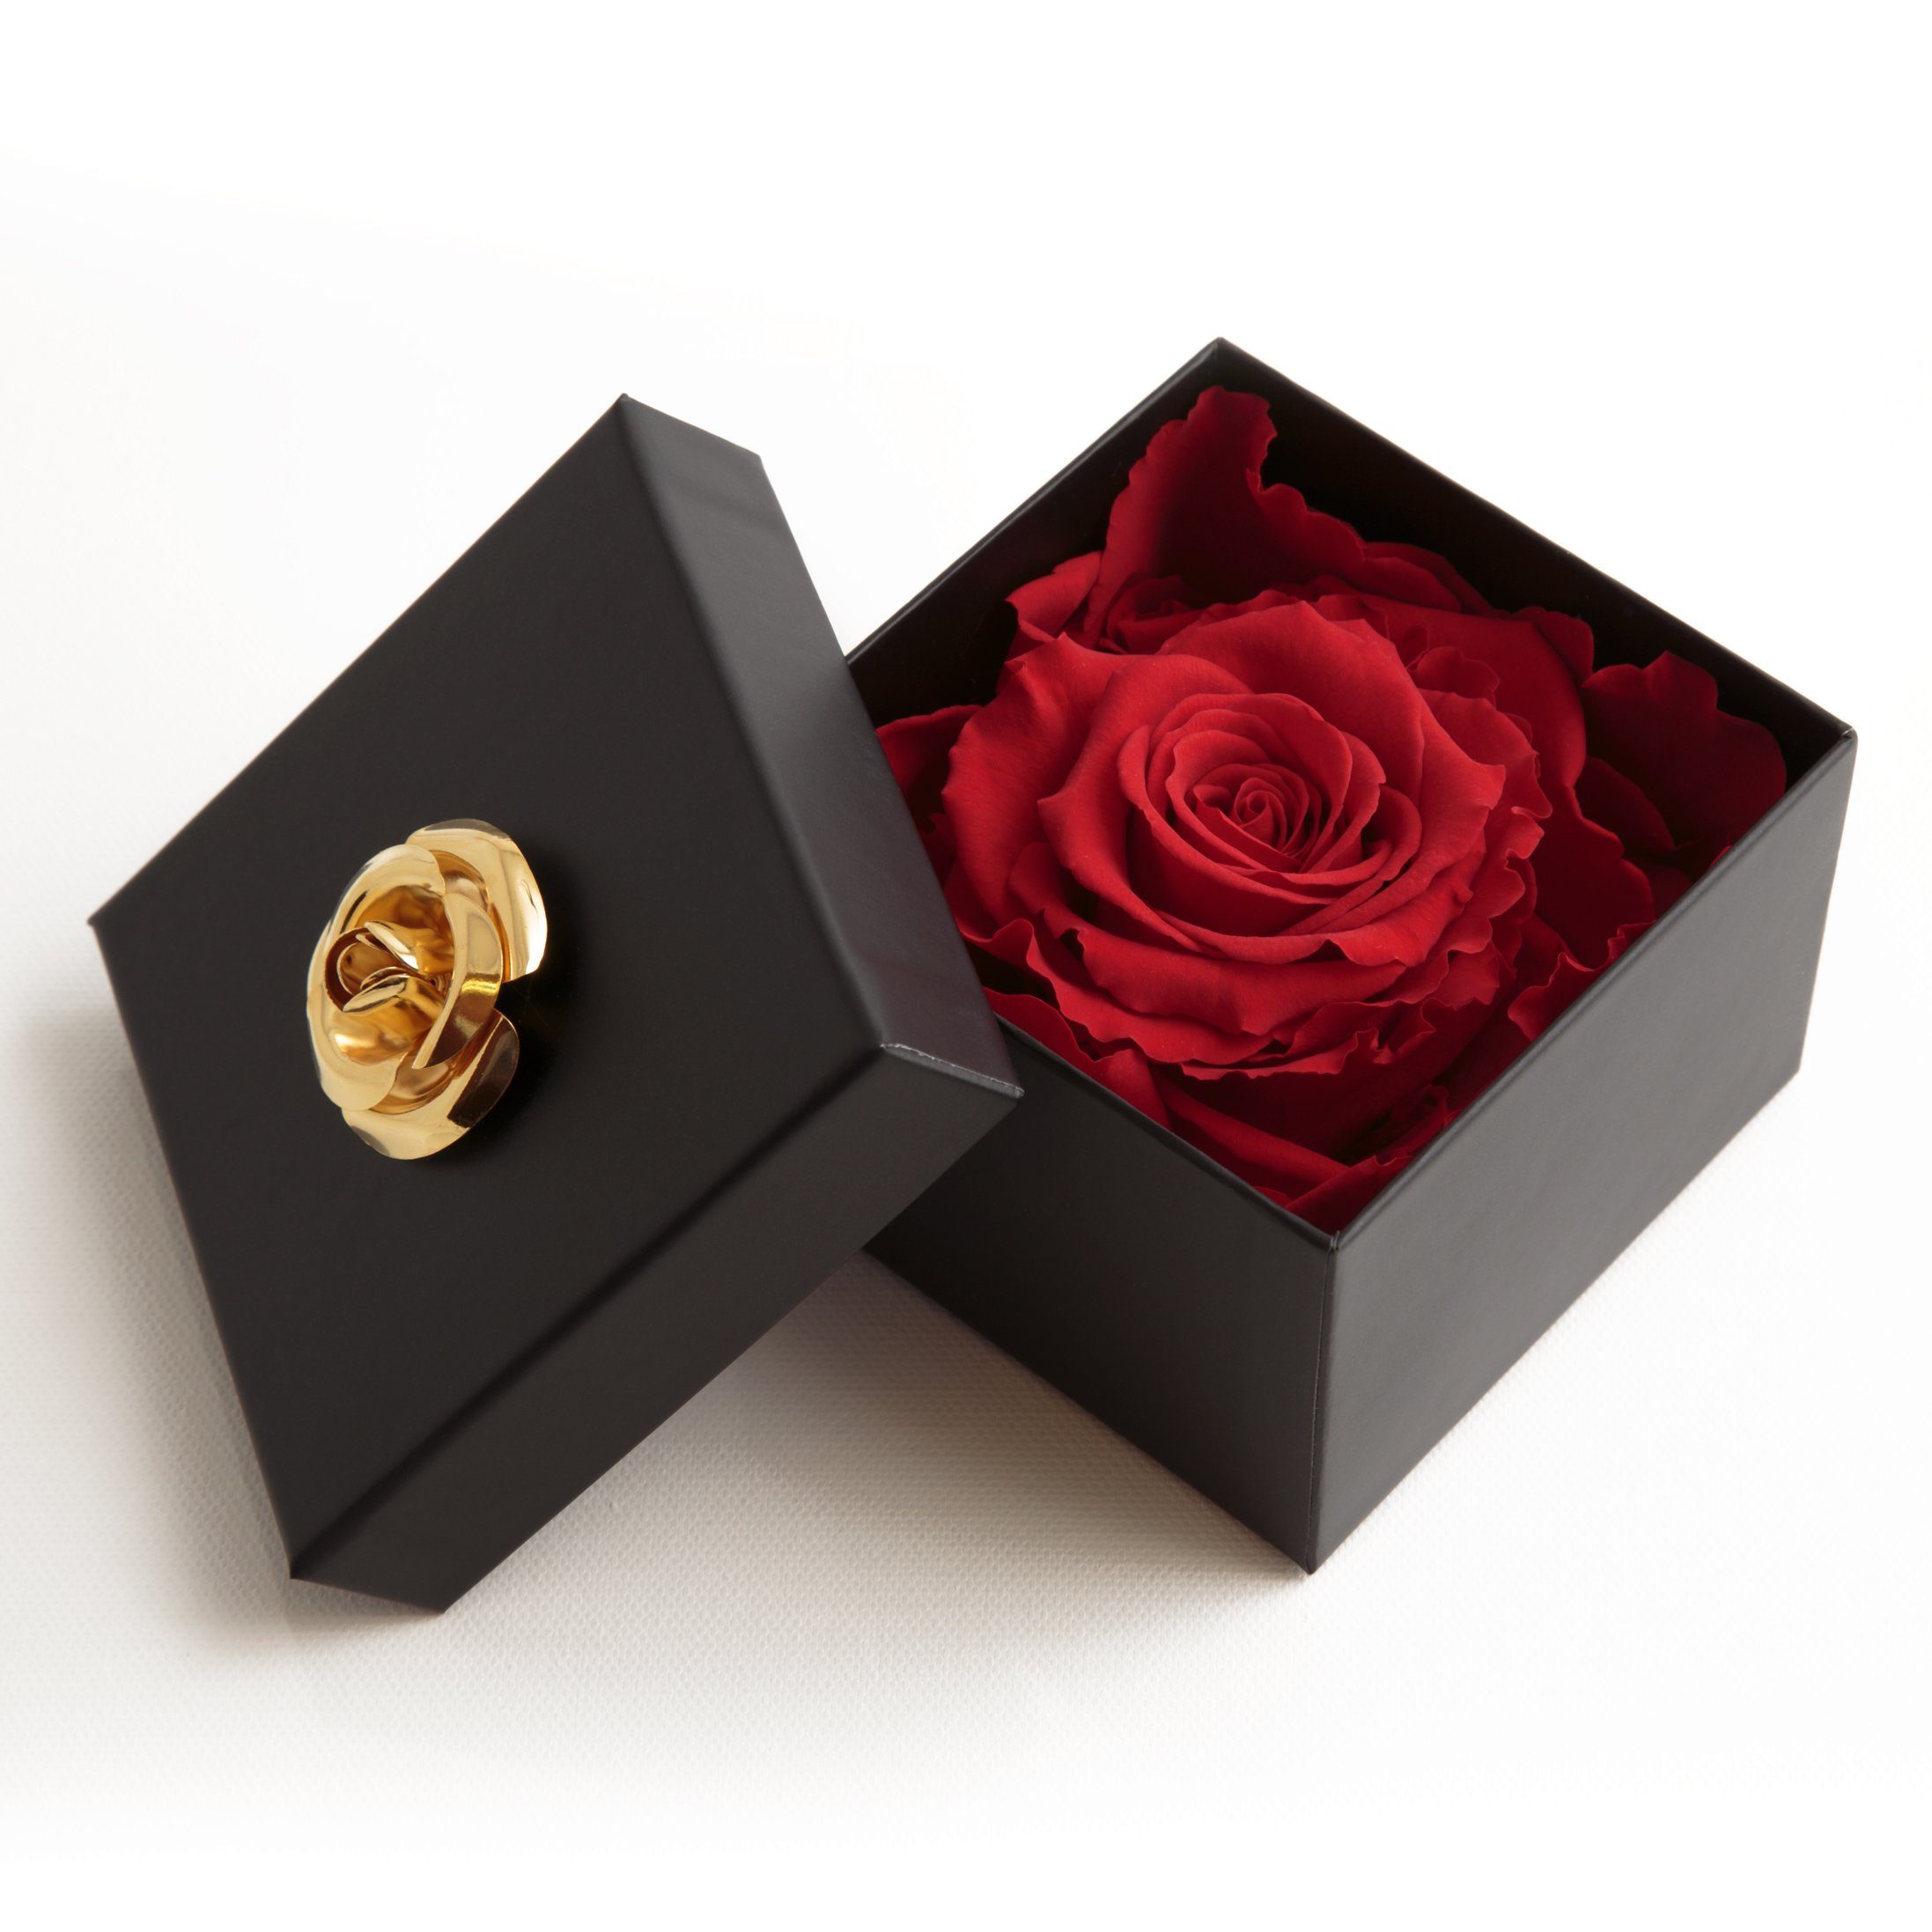 Kunstblume 1 Infinity zu mit Echte SCHULZ Rose haltbar Jahre Heidelberg, rot in 6.5 Jahre Höhe Blumendeckel Box cm, Rose, 3 3 ROSEMARIE bis Rose Rose haltbar